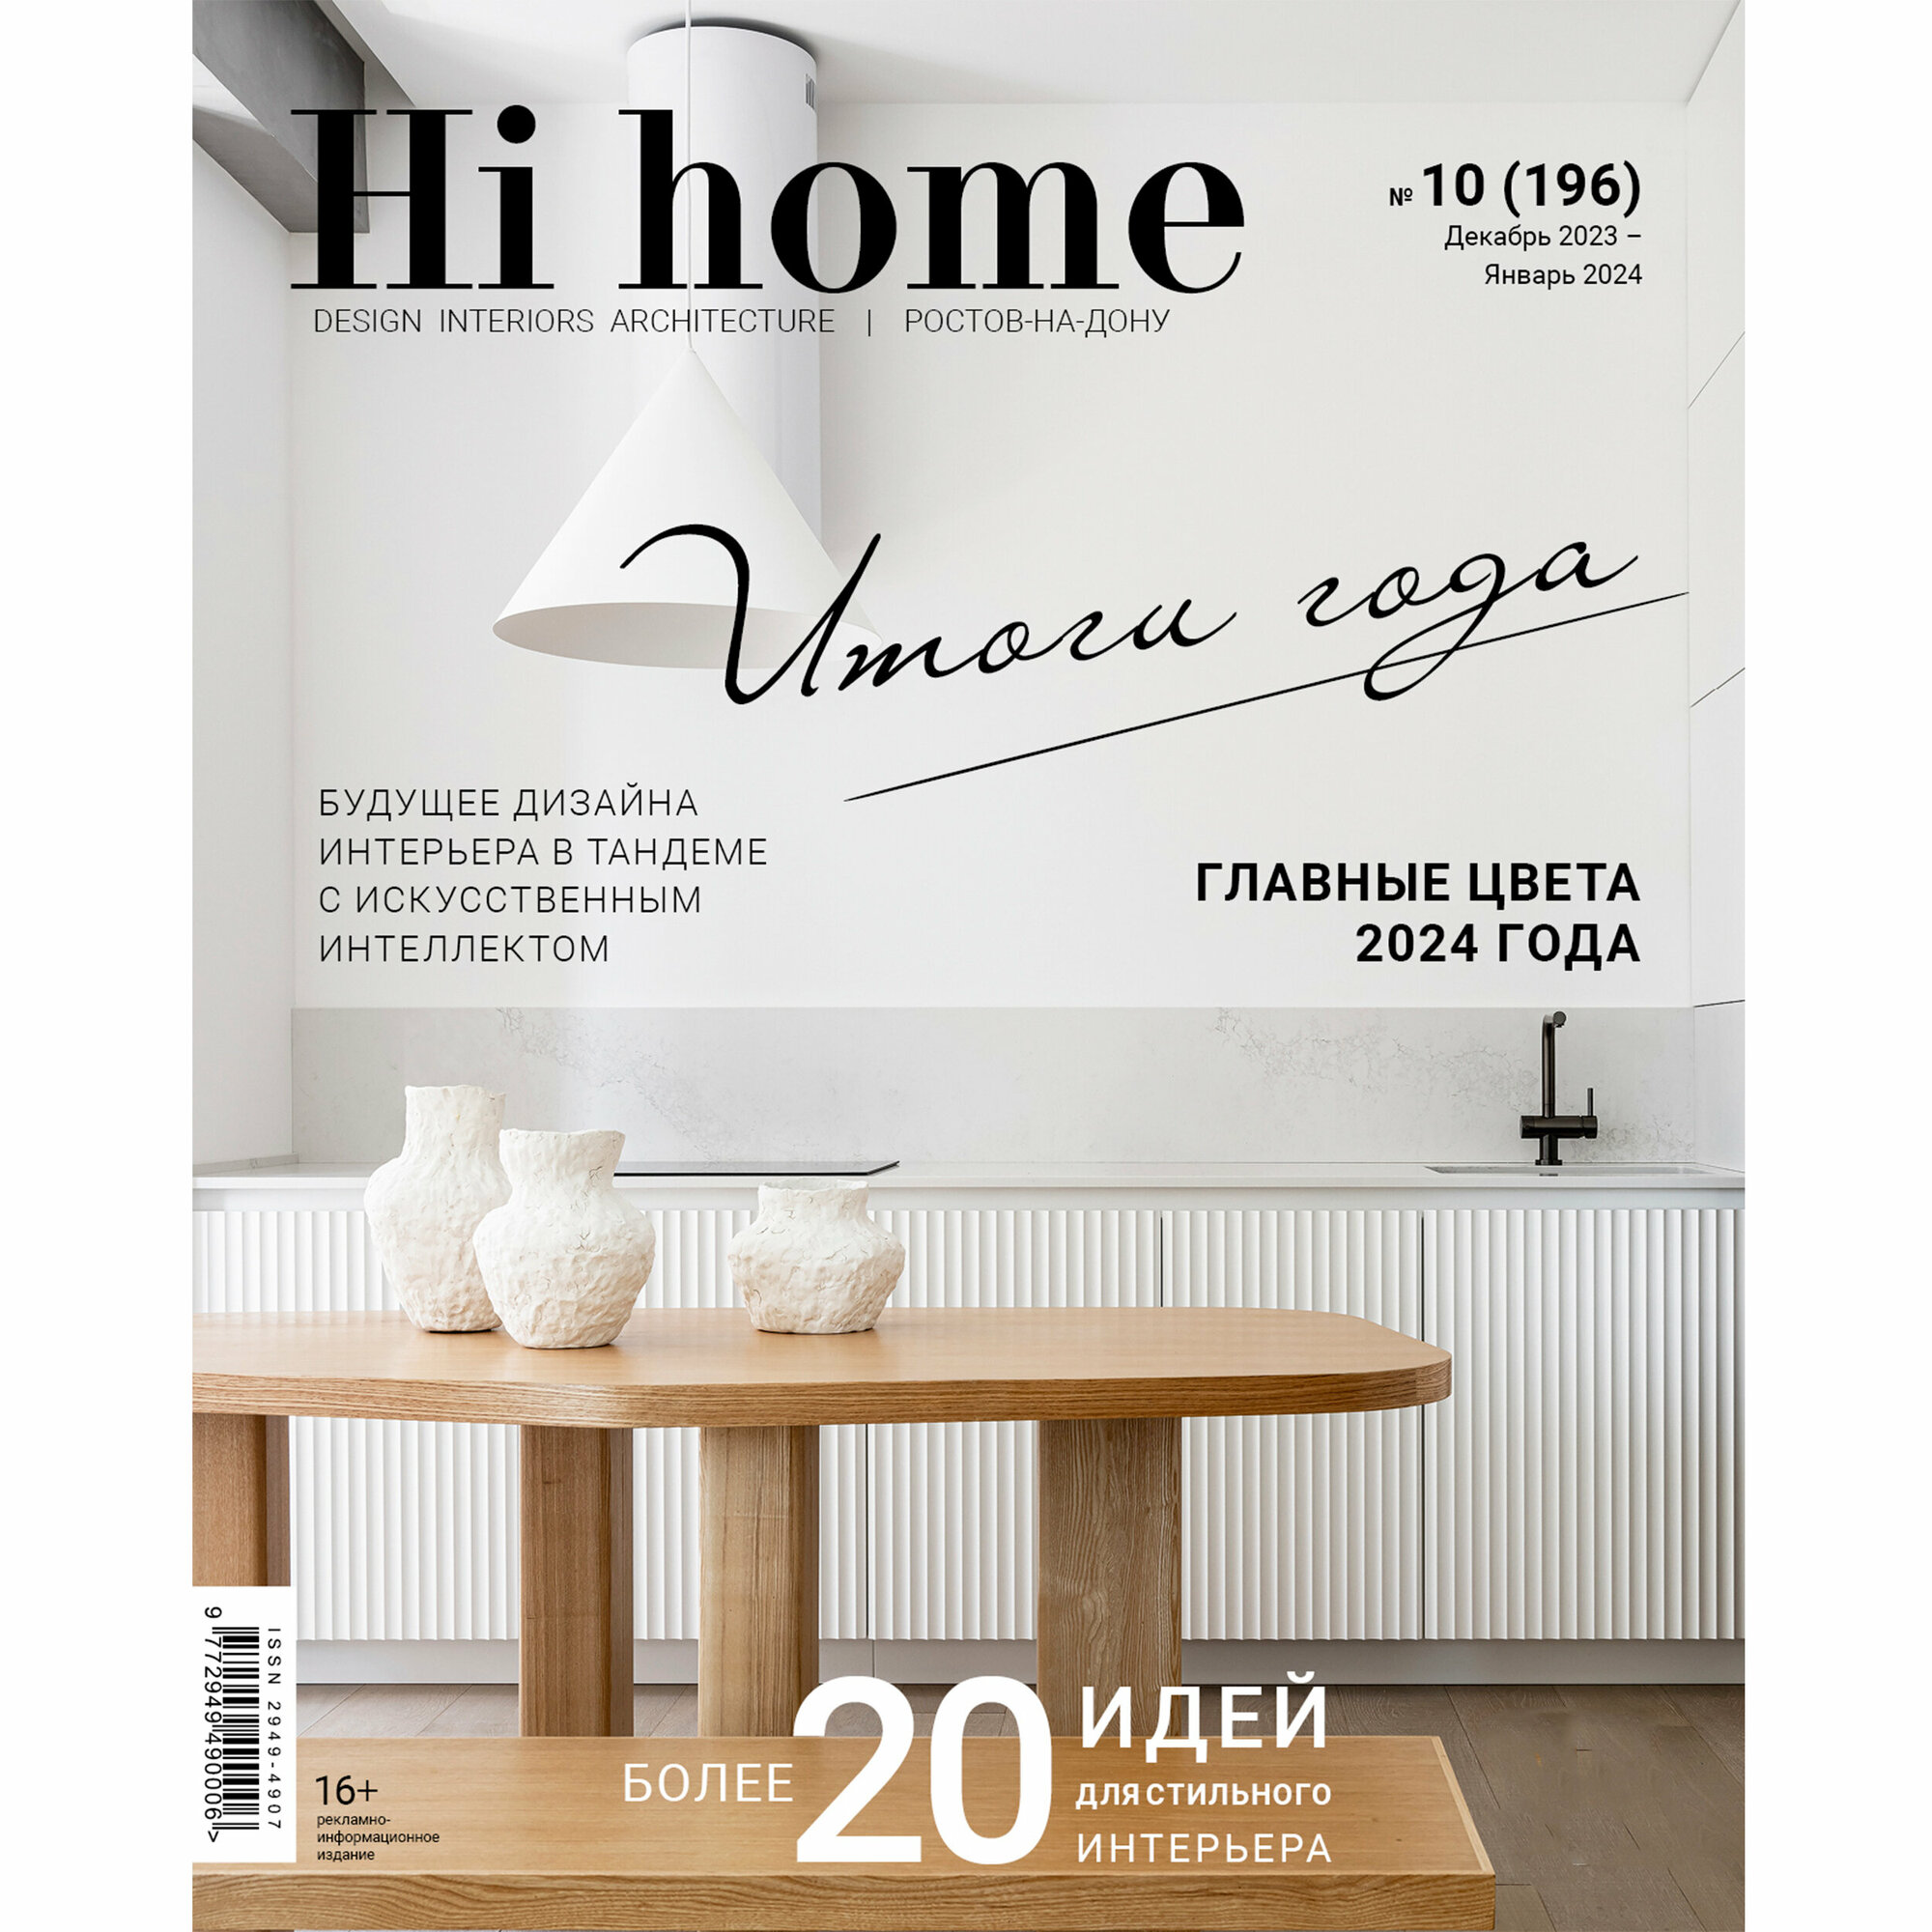 Интерьерный журнал Hi home Design Interiors Architecture, Ростов-на-Дону 10(196), декабрь 2023